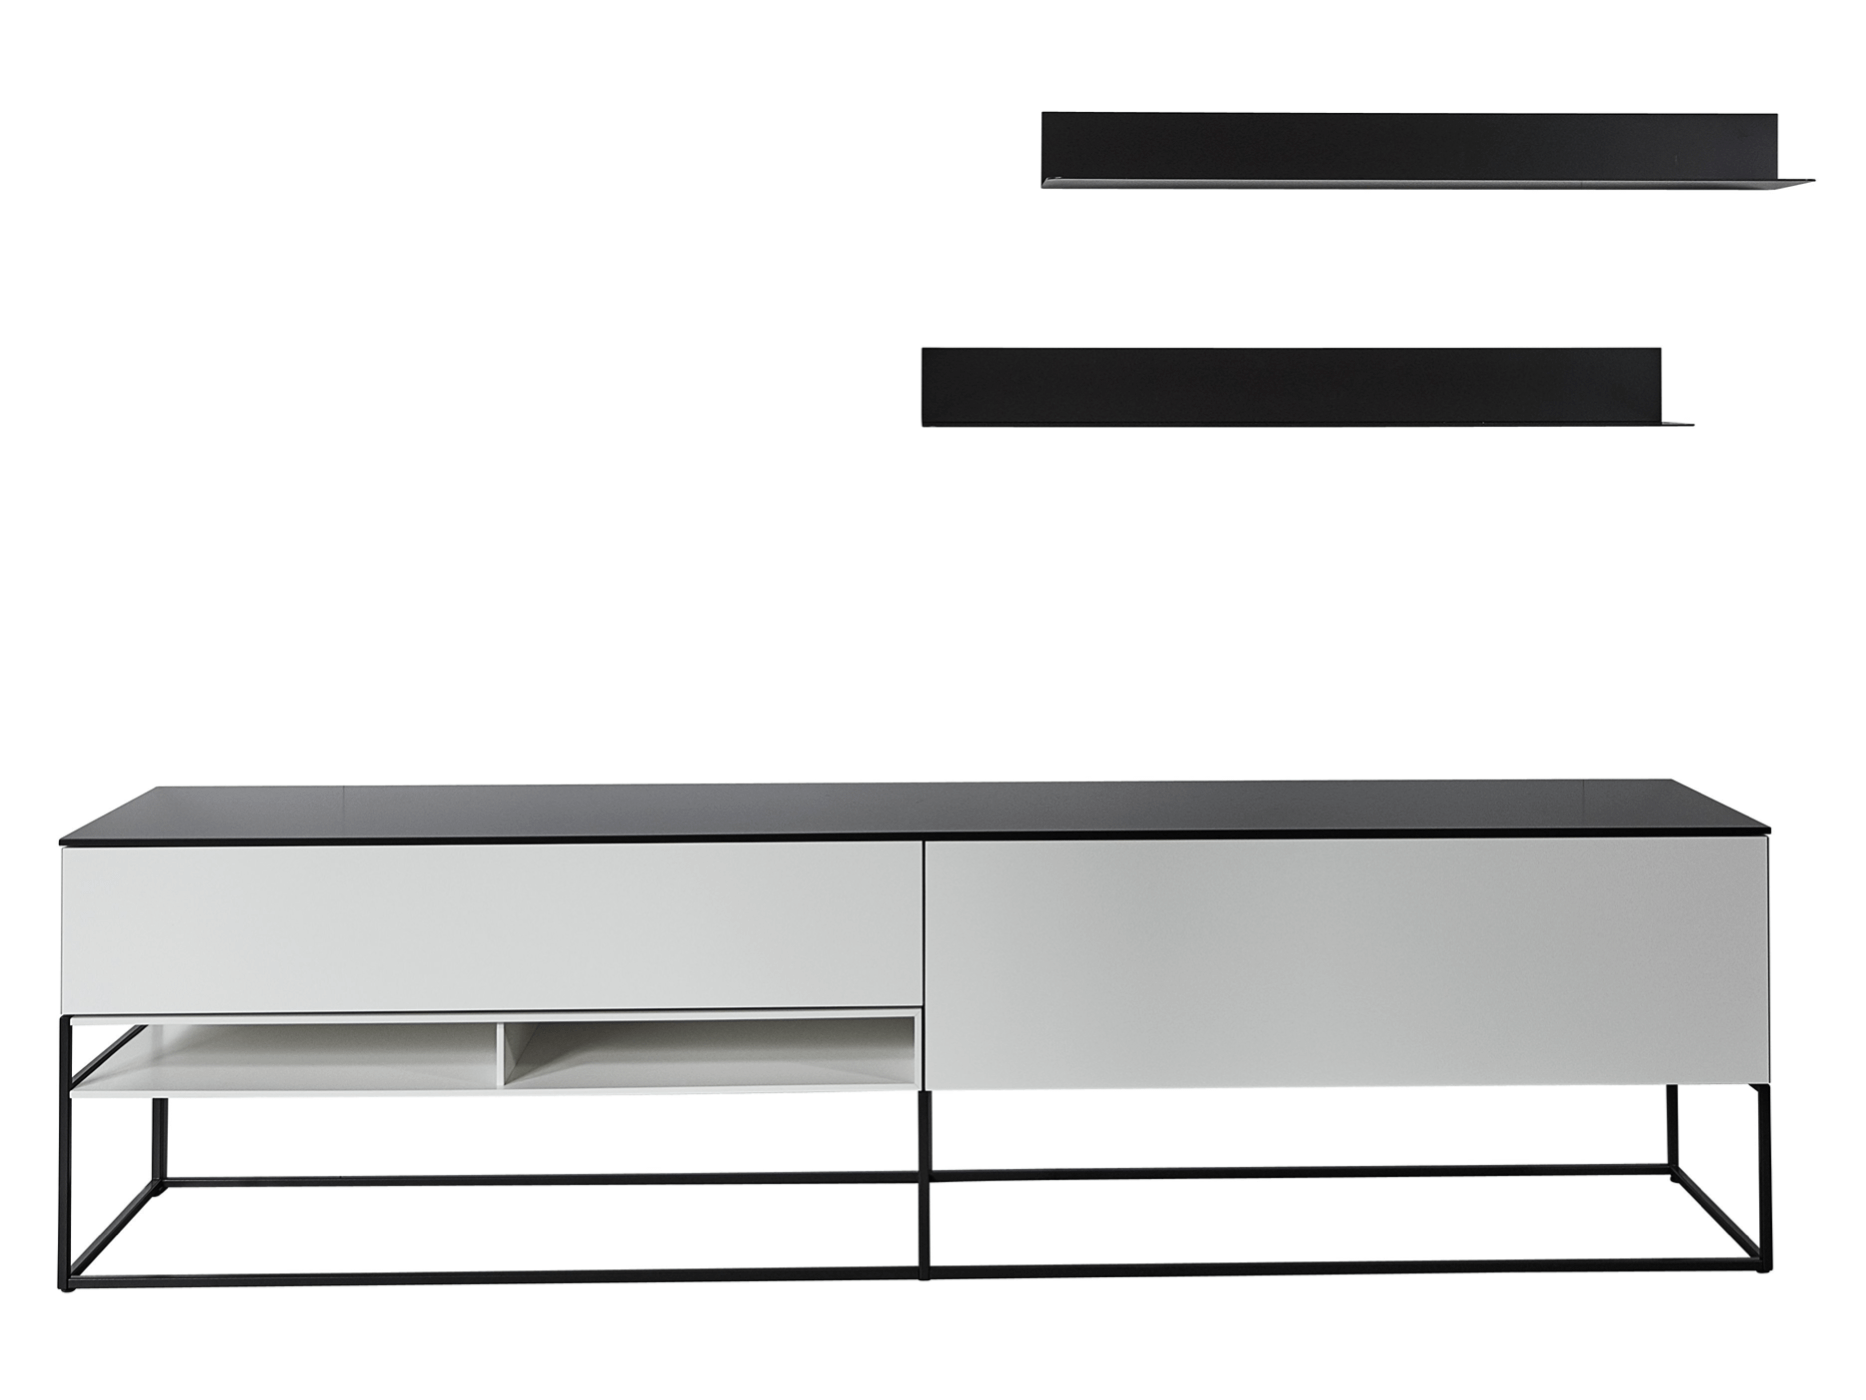 Lowboard Catona der Marke Contur in weiß mit schwarzem Metallgestell und grauer Platte